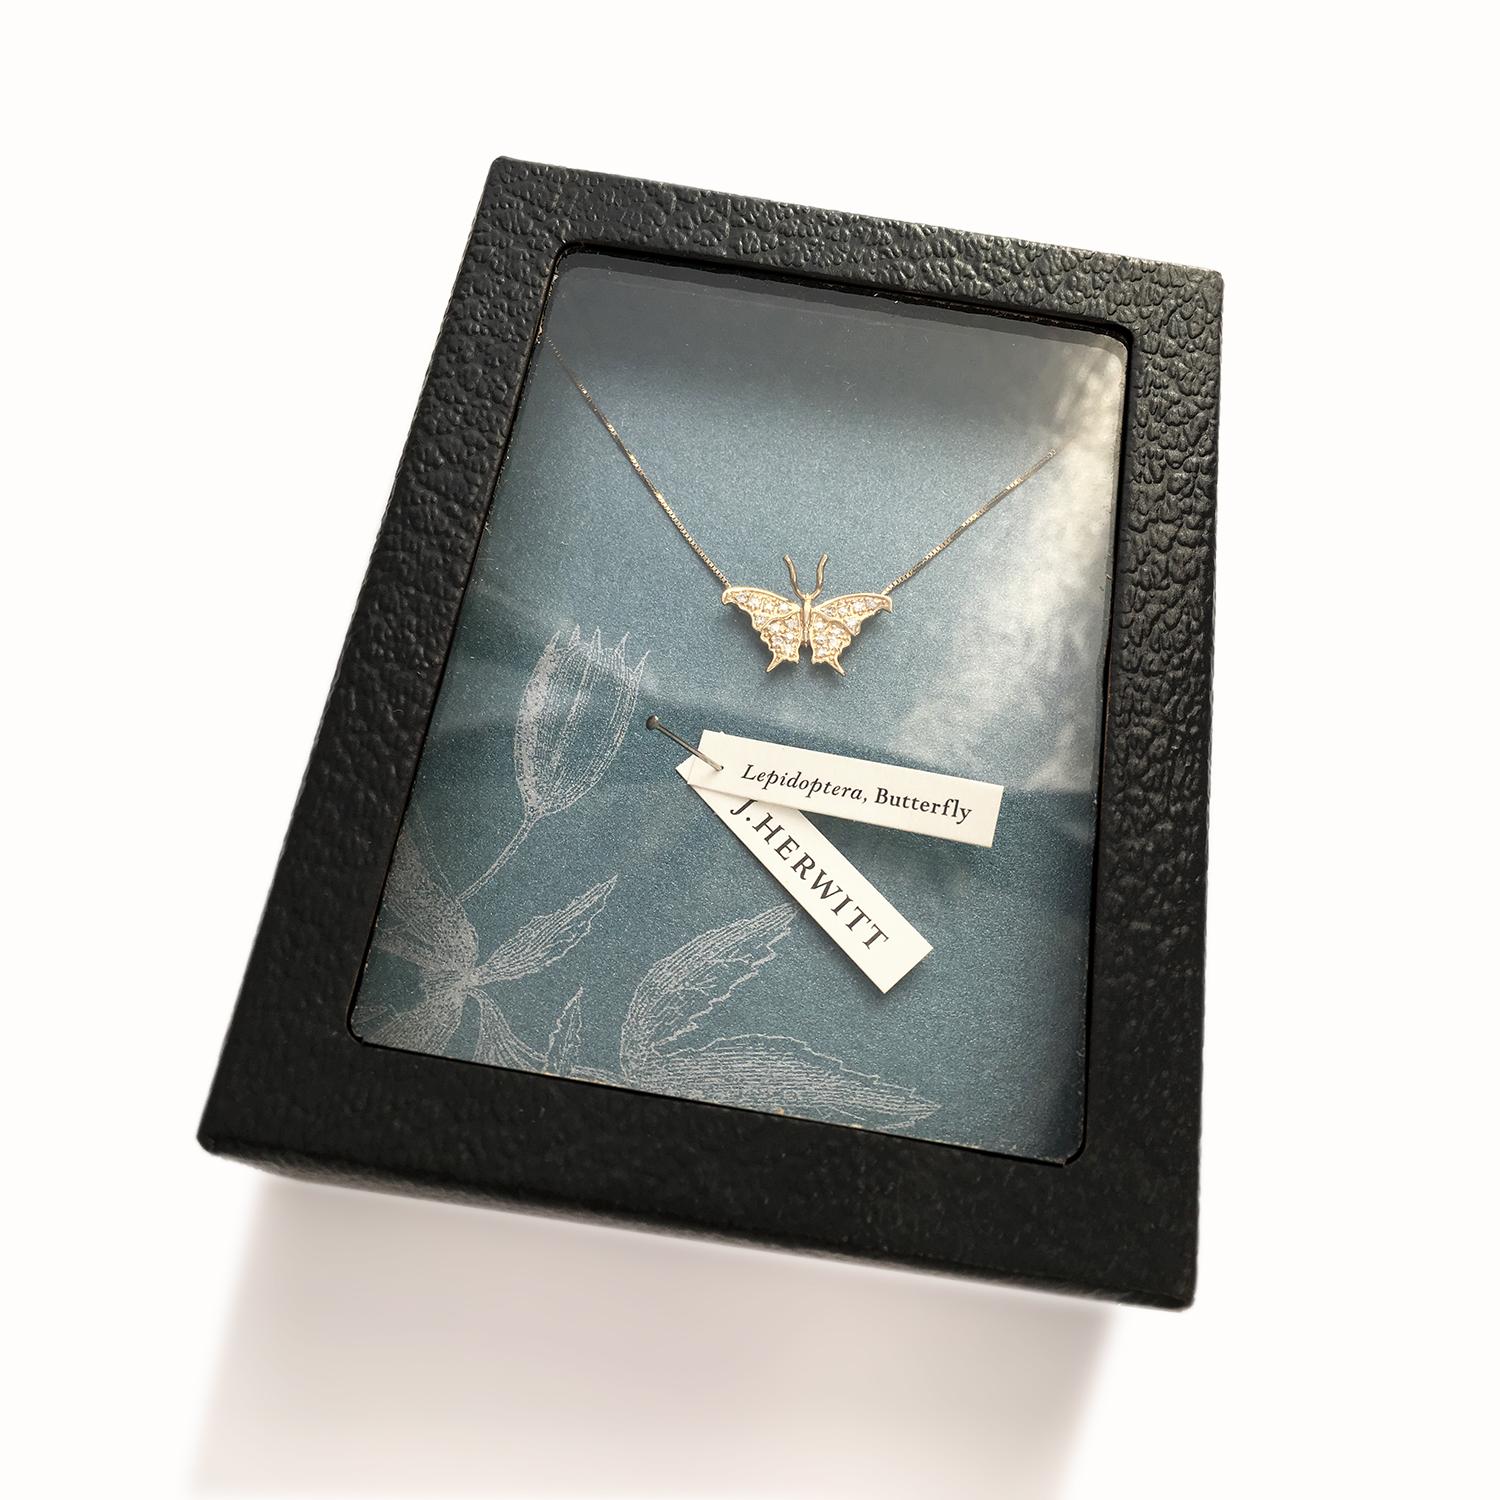 Wir stellen Ihnen die bezaubernde Large Butterfly Diamond Necklace vor, ein faszinierendes Schmuckstück, das mit seiner bezaubernden Schönheit die Herzen erobert. Diese mit viel Liebe zum Detail gefertigte Halskette ist ein wahres Meisterwerk, das